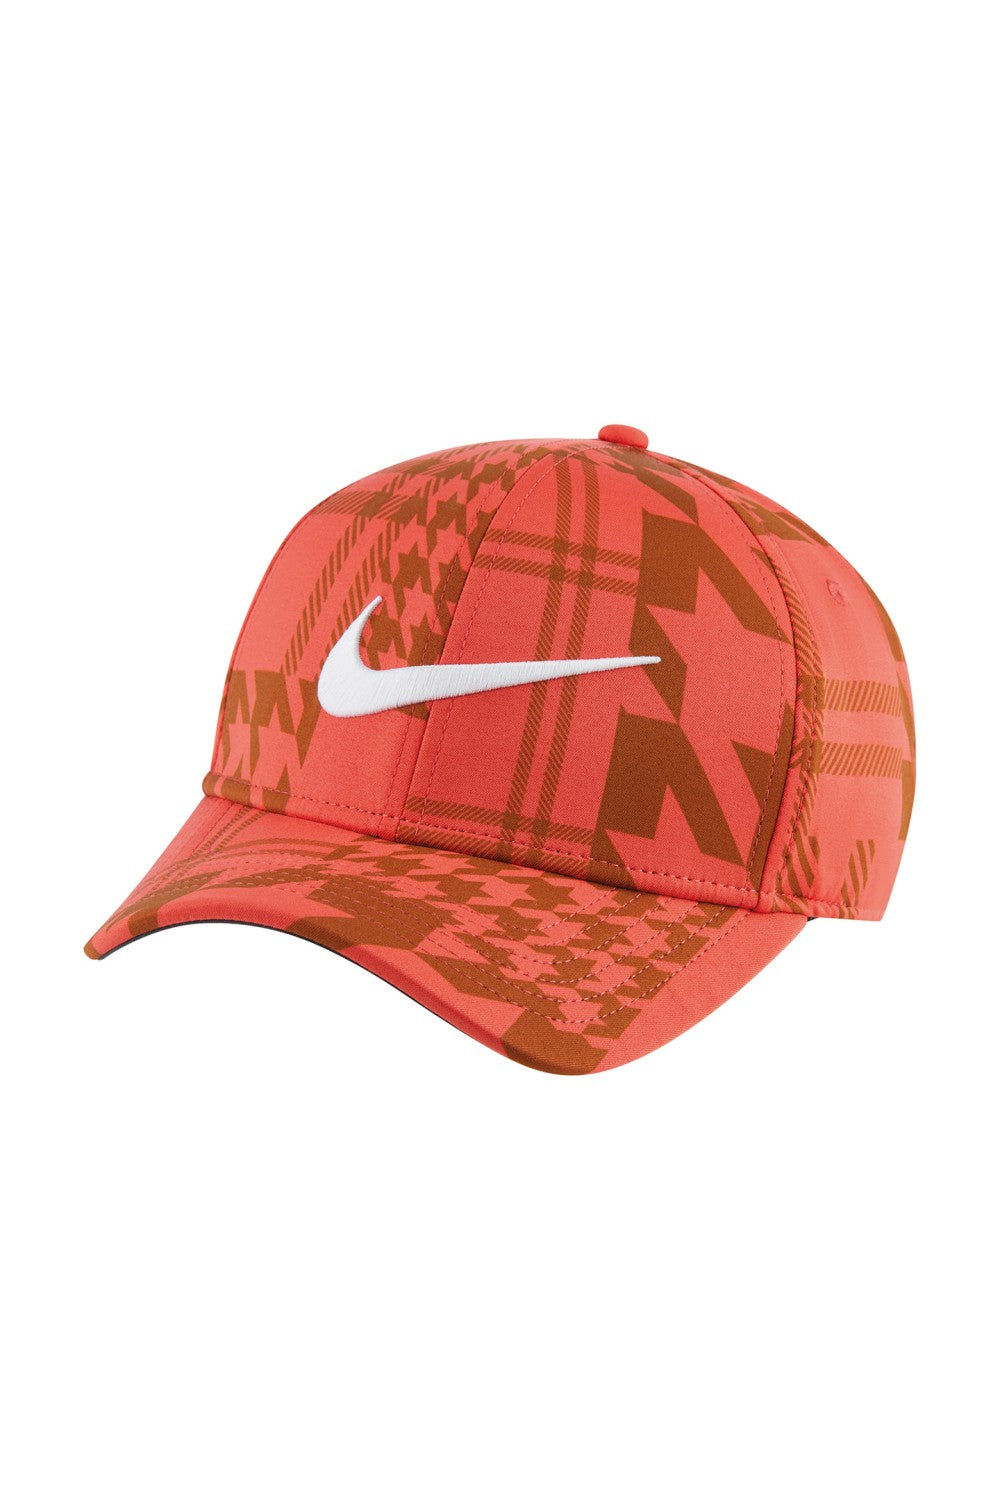 Nike Arobill Baseball Cap (Track Red/Dark Driftwood/White)